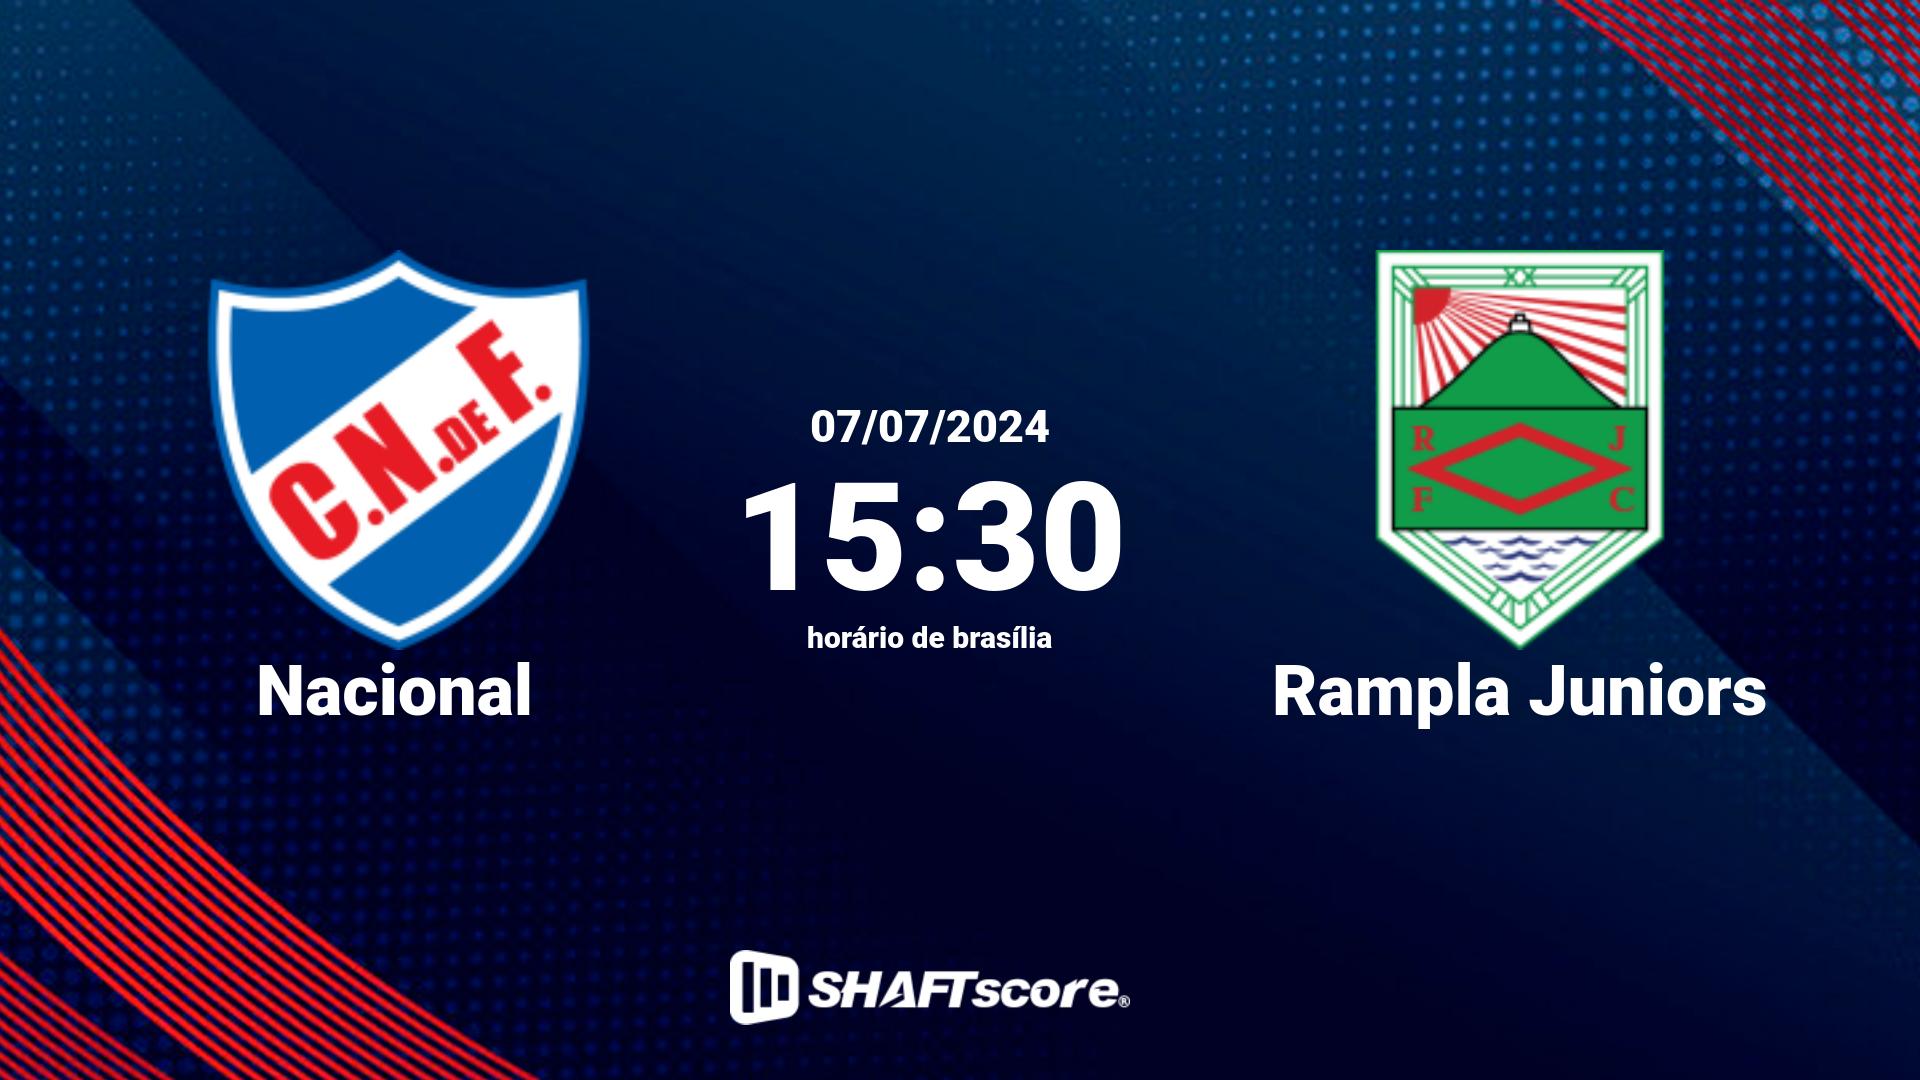 Estatísticas do jogo Nacional vs Rampla Juniors 07.07 15:30